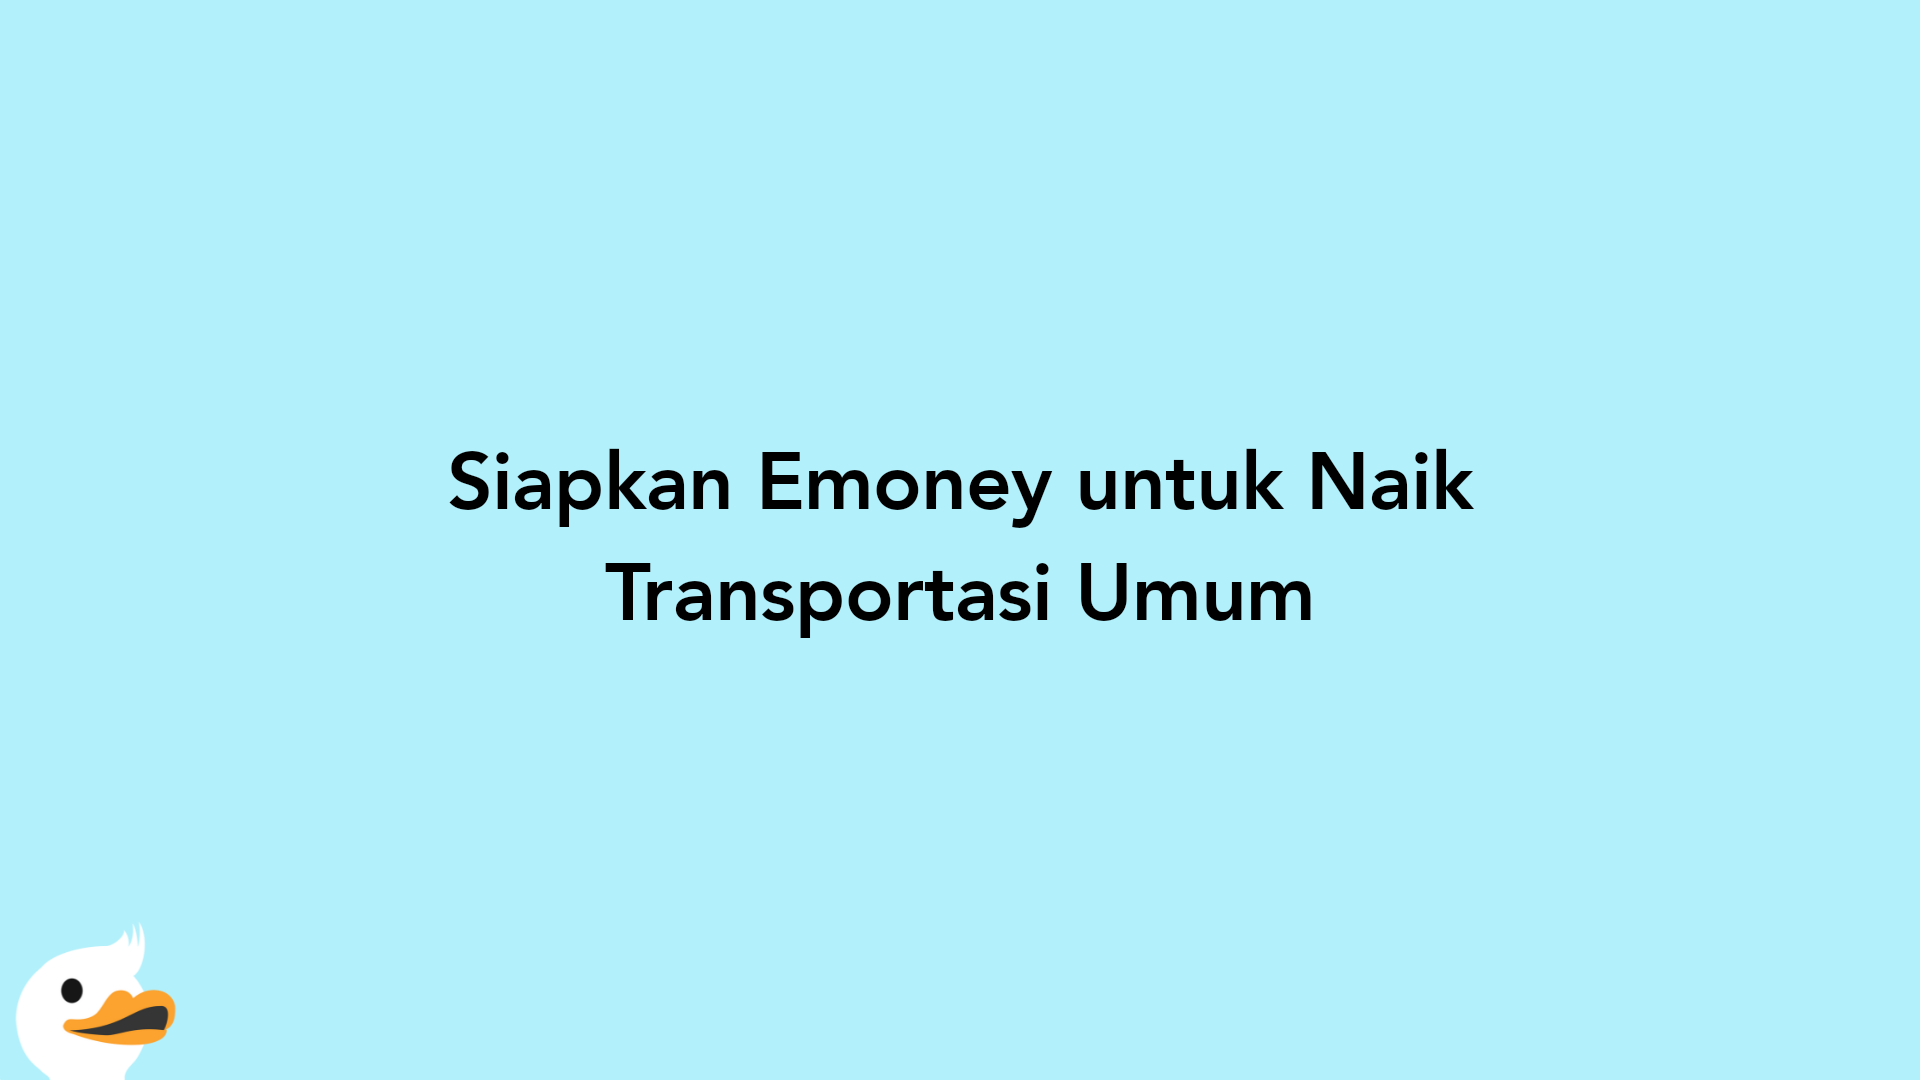 Siapkan Emoney untuk Naik Transportasi Umum